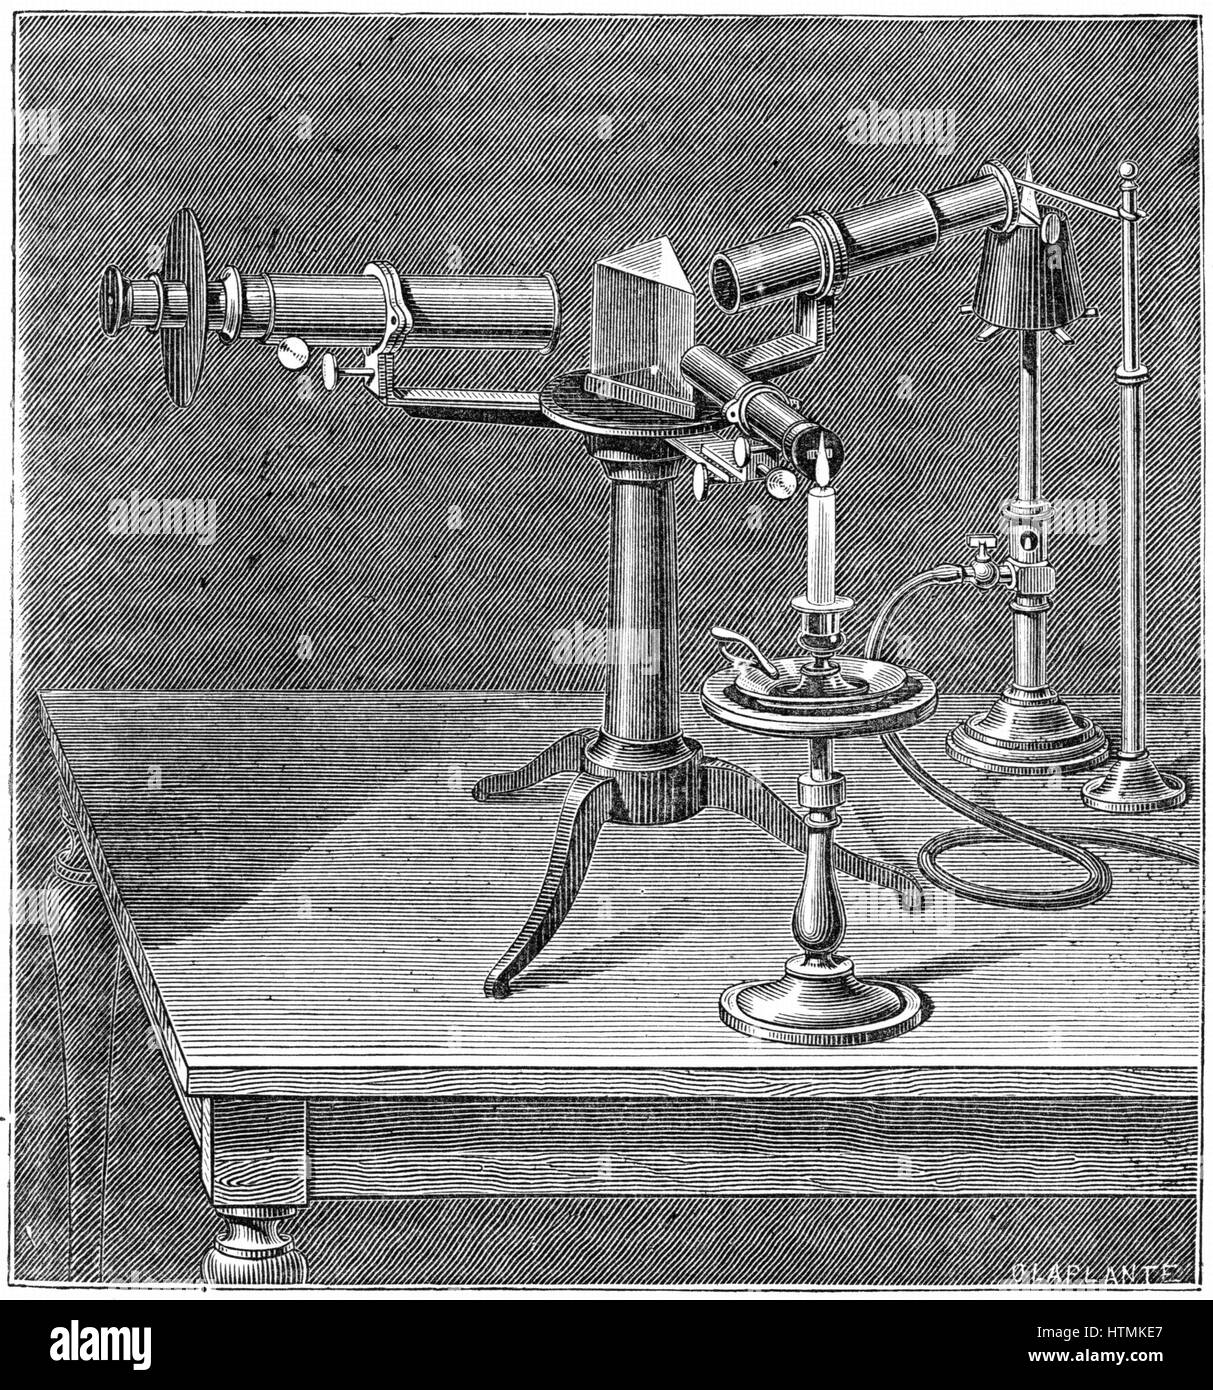 Spettroscopio del tipo utilizzato da Robert Wilhelm Bunsen (1811-1899) e Gustav Robert Kirchhoff (1824-1887). Scoperto per l'analisi di spettro (1859) che hanno permesso la scoperta di elementi comprendendo cesio e rubidio. Incisione c.1895 Foto Stock